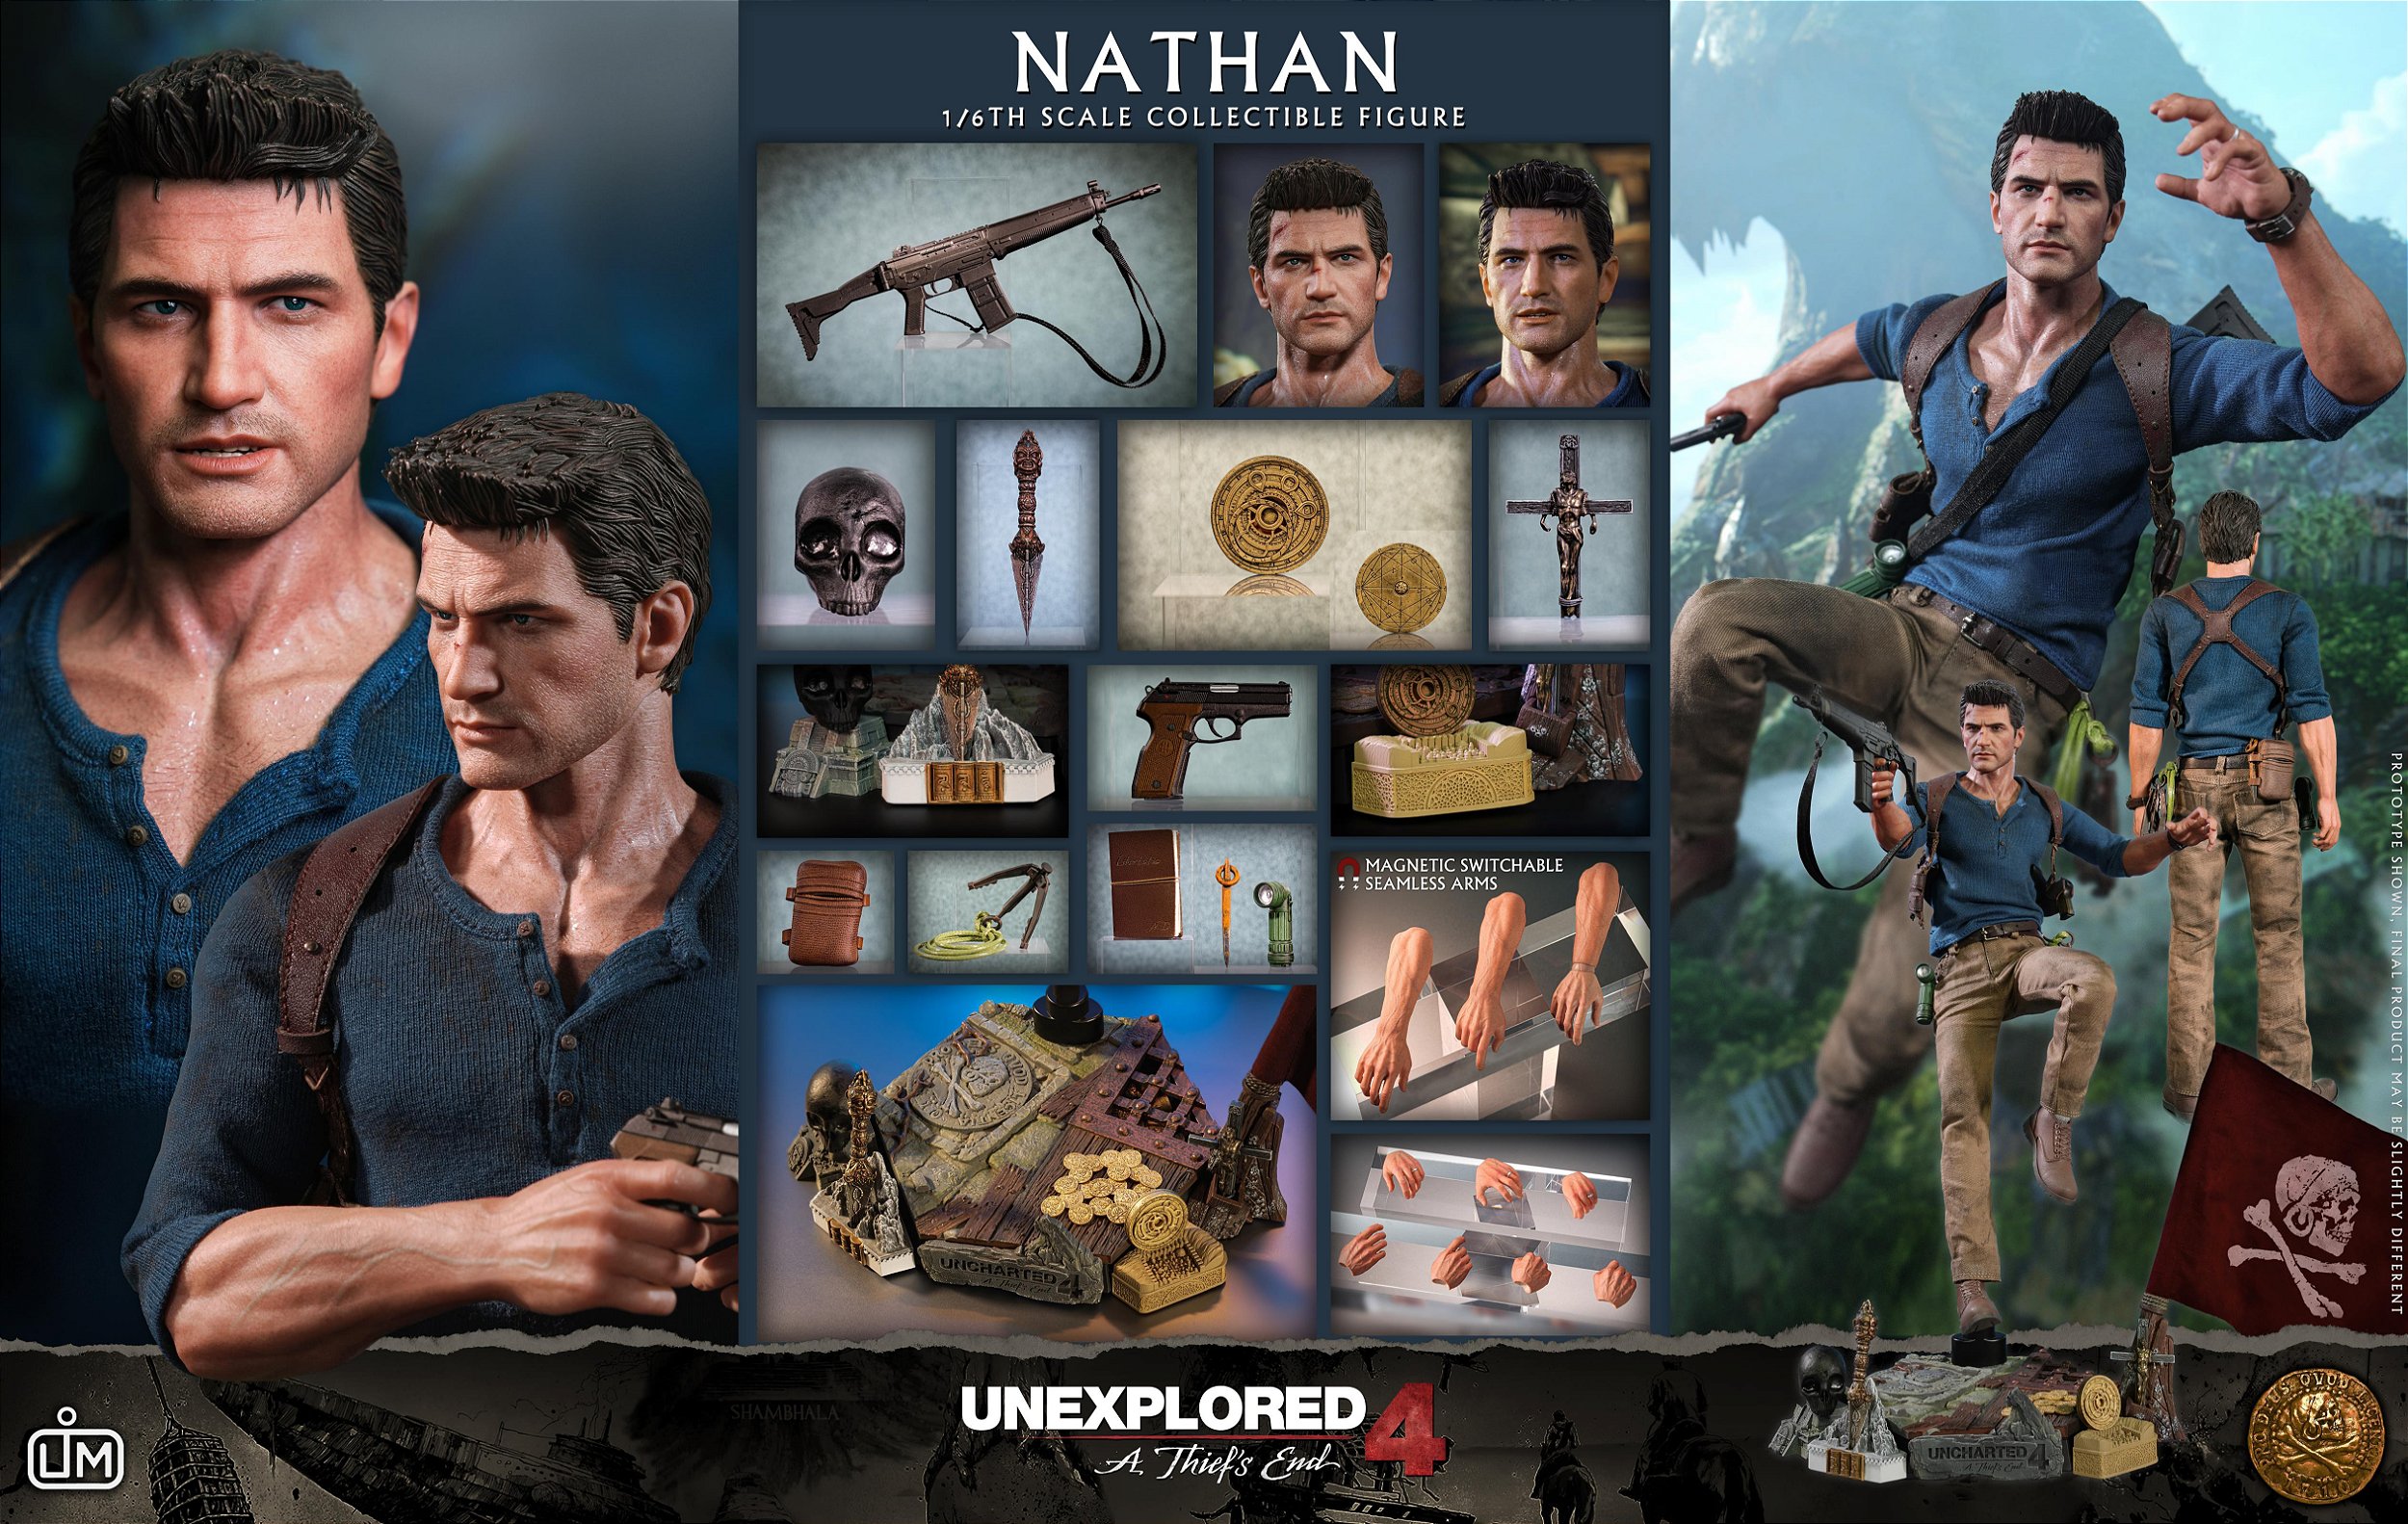 Nathan Drake Uncharted 4 A Thief's End 1/6 Limtoys - Prime Colecionismo -  Colecionando clientes, e acima de tudo bons amigos.